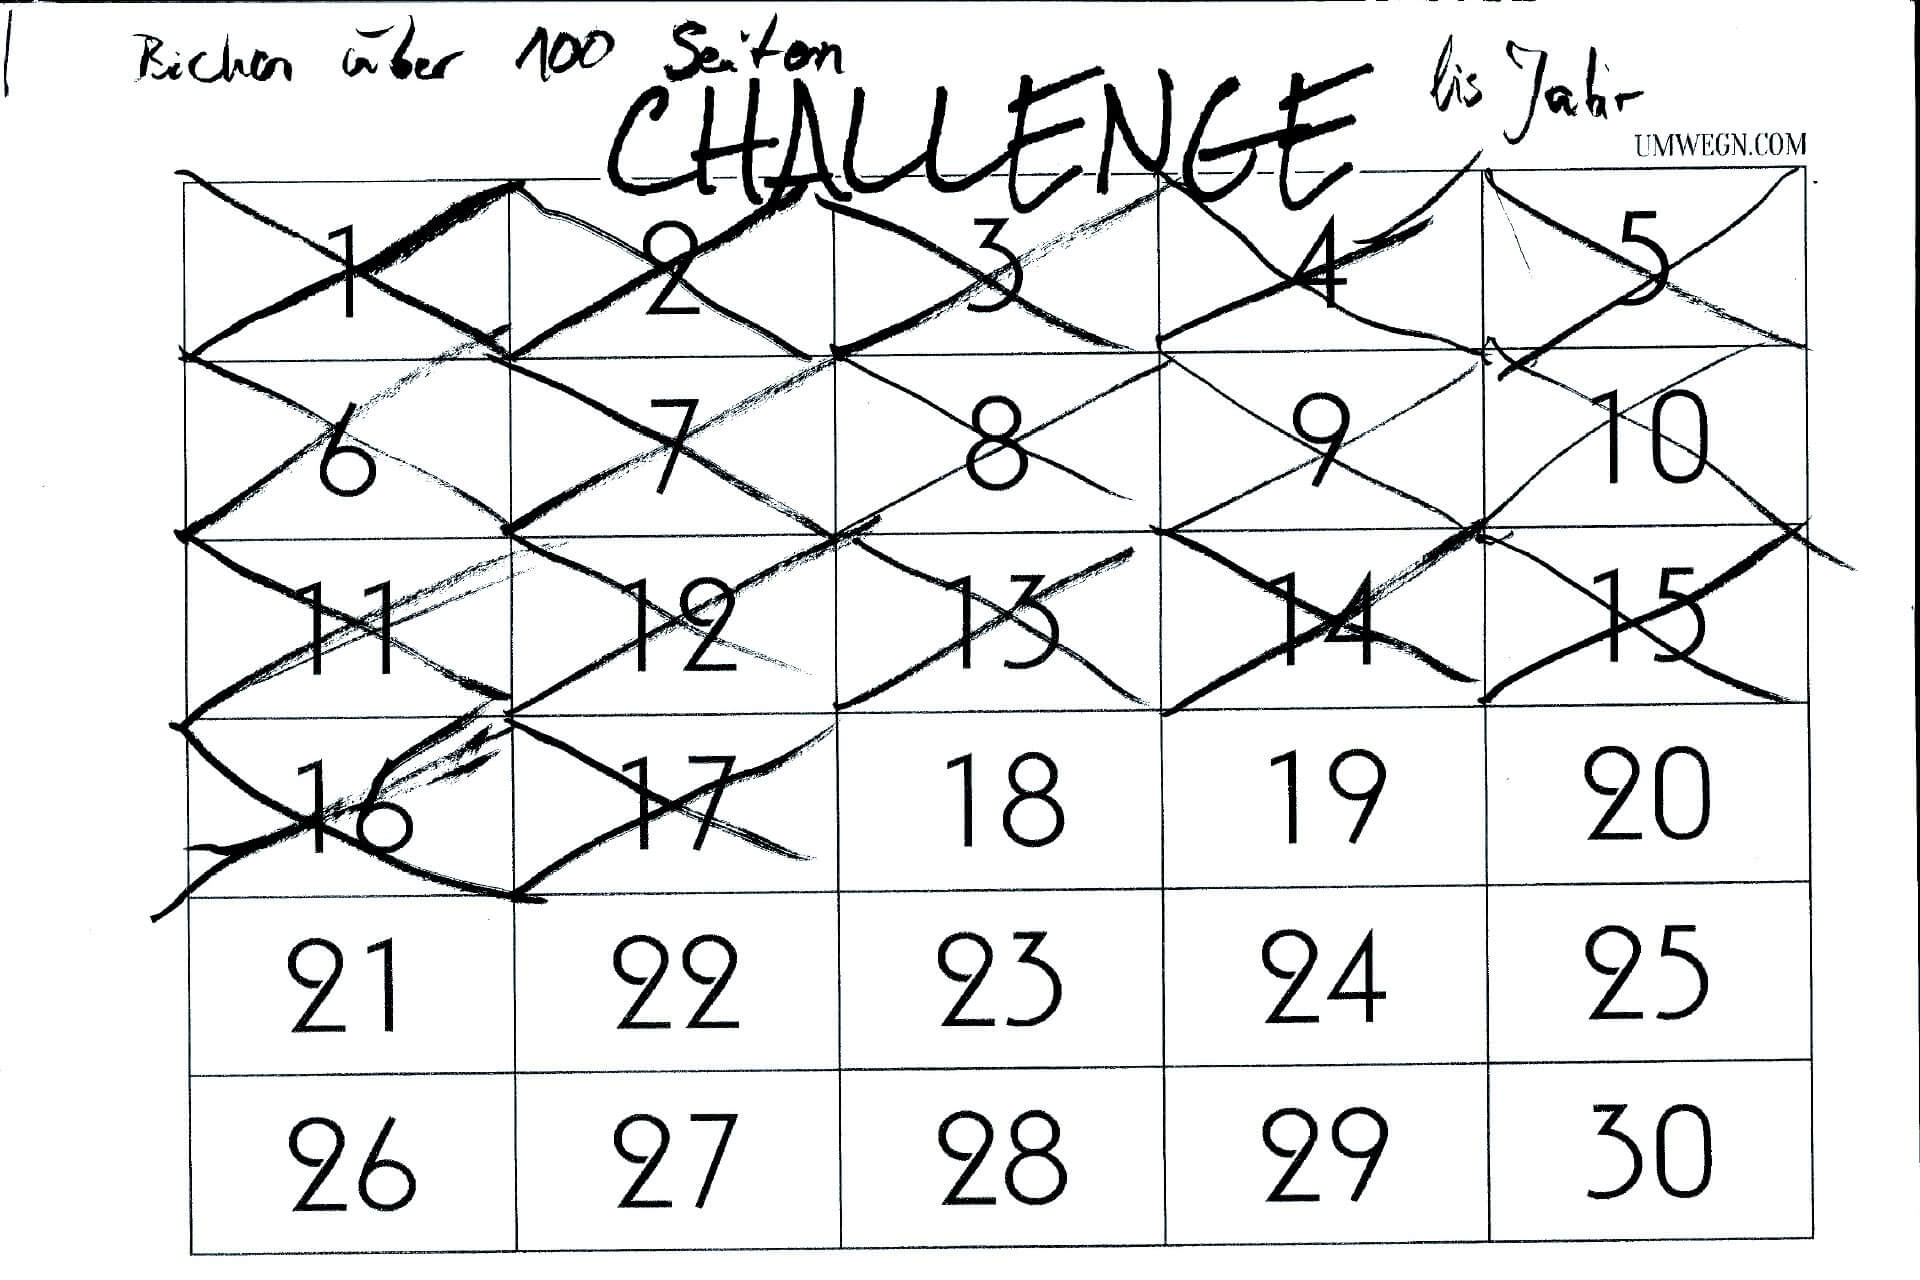 Selbstsabotage: Mein Challenge Kalender